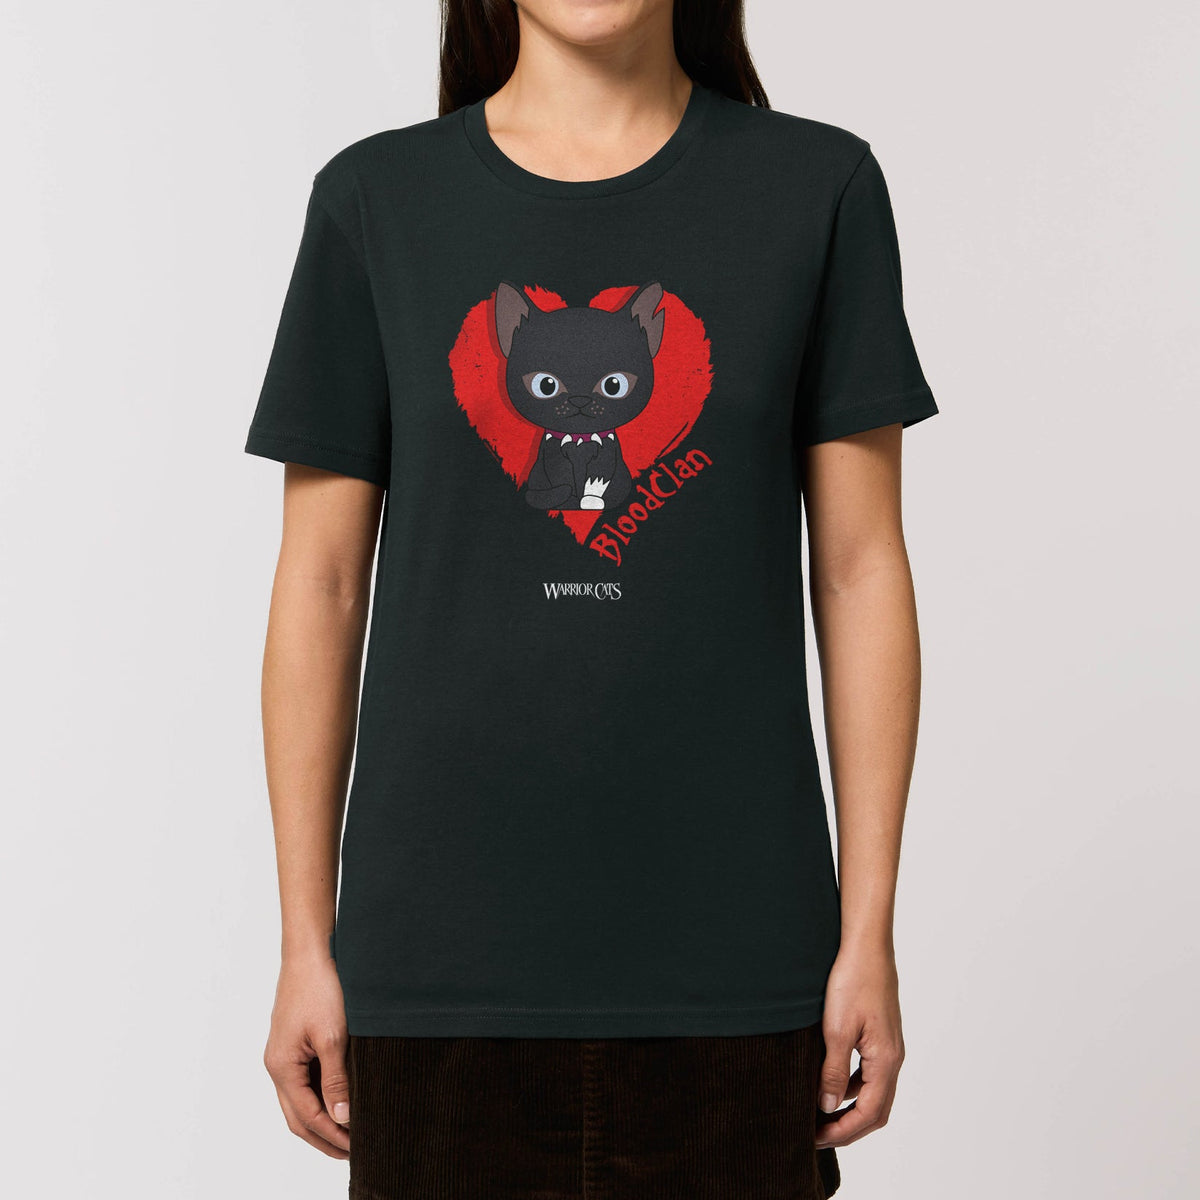 BloodClan - Adult Ladies T-Shirt